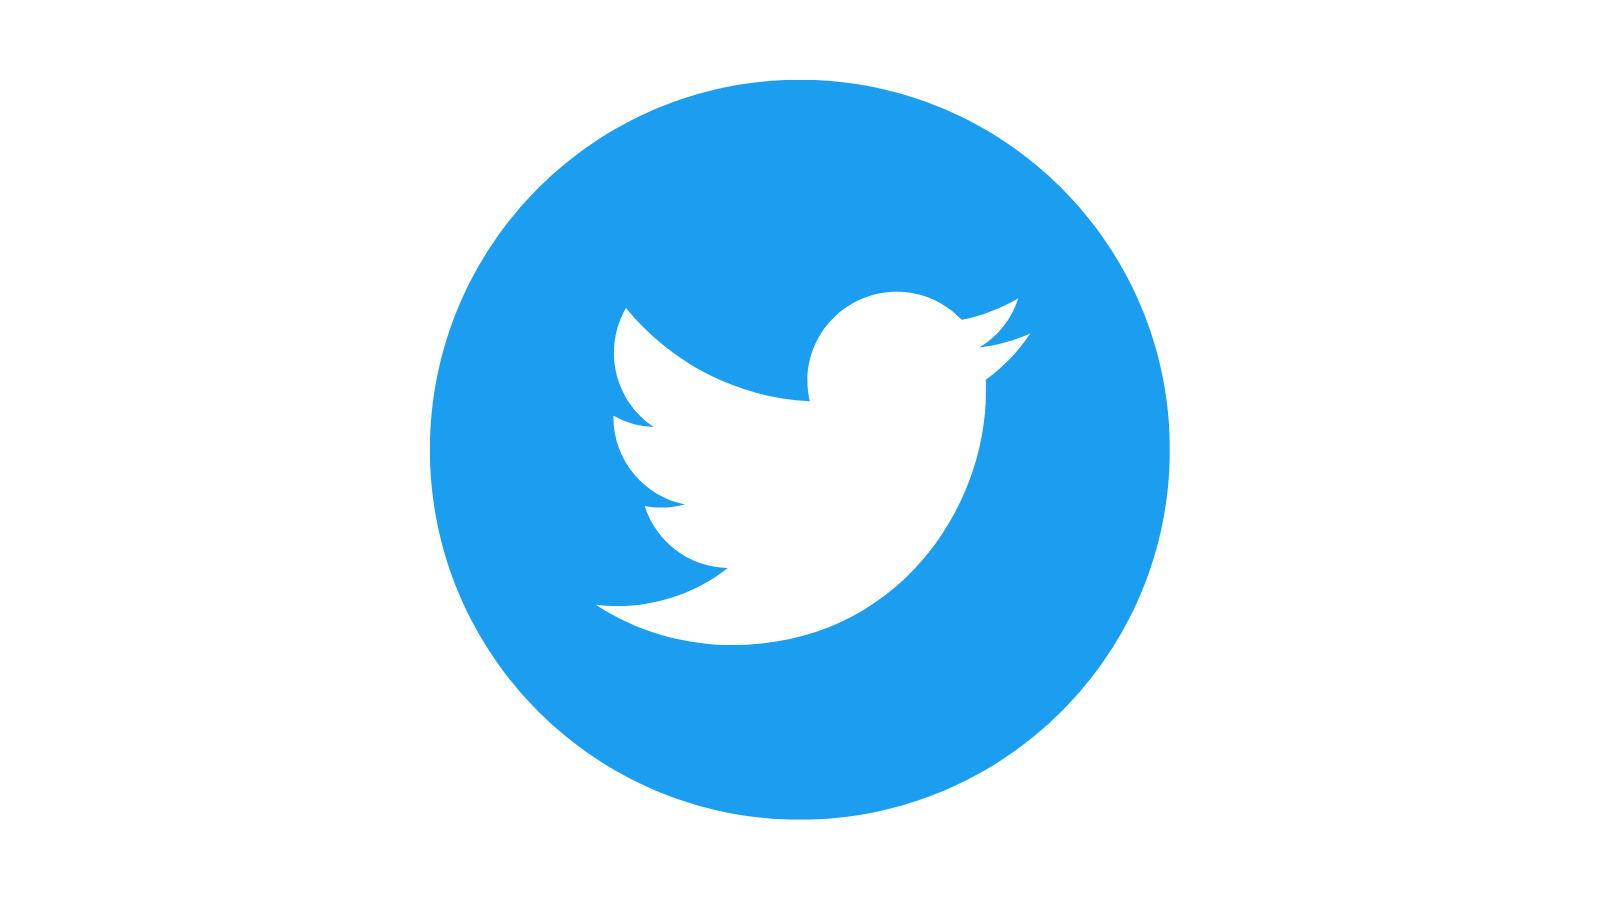 Twitter Logo, white bird blue circle version